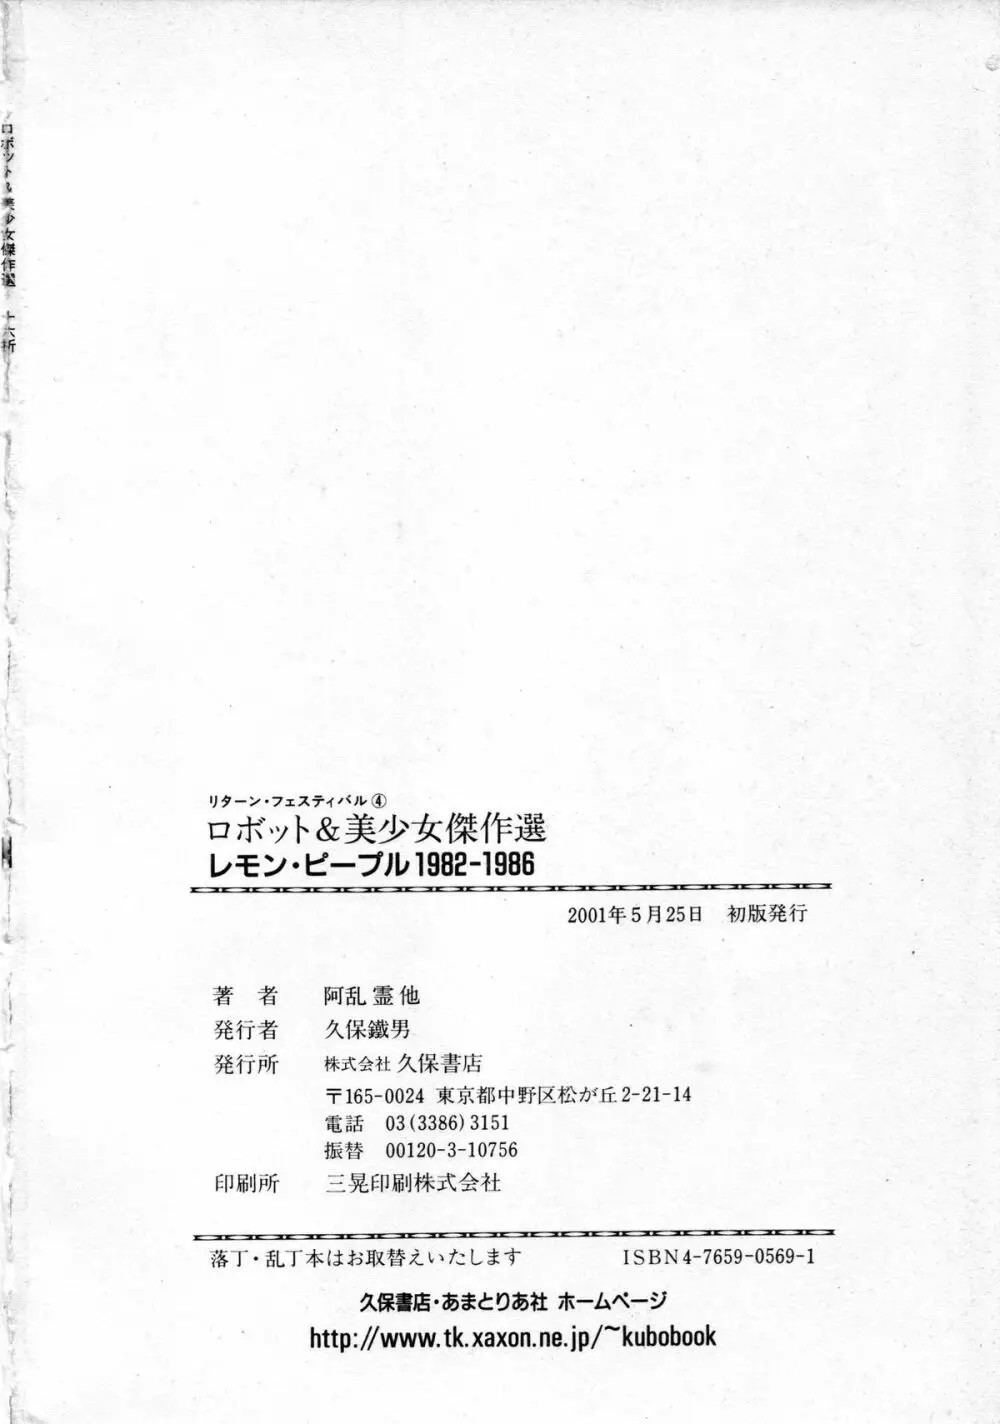 ロボット&美少女傑作選 レモン・ピープル1982-1986 248ページ